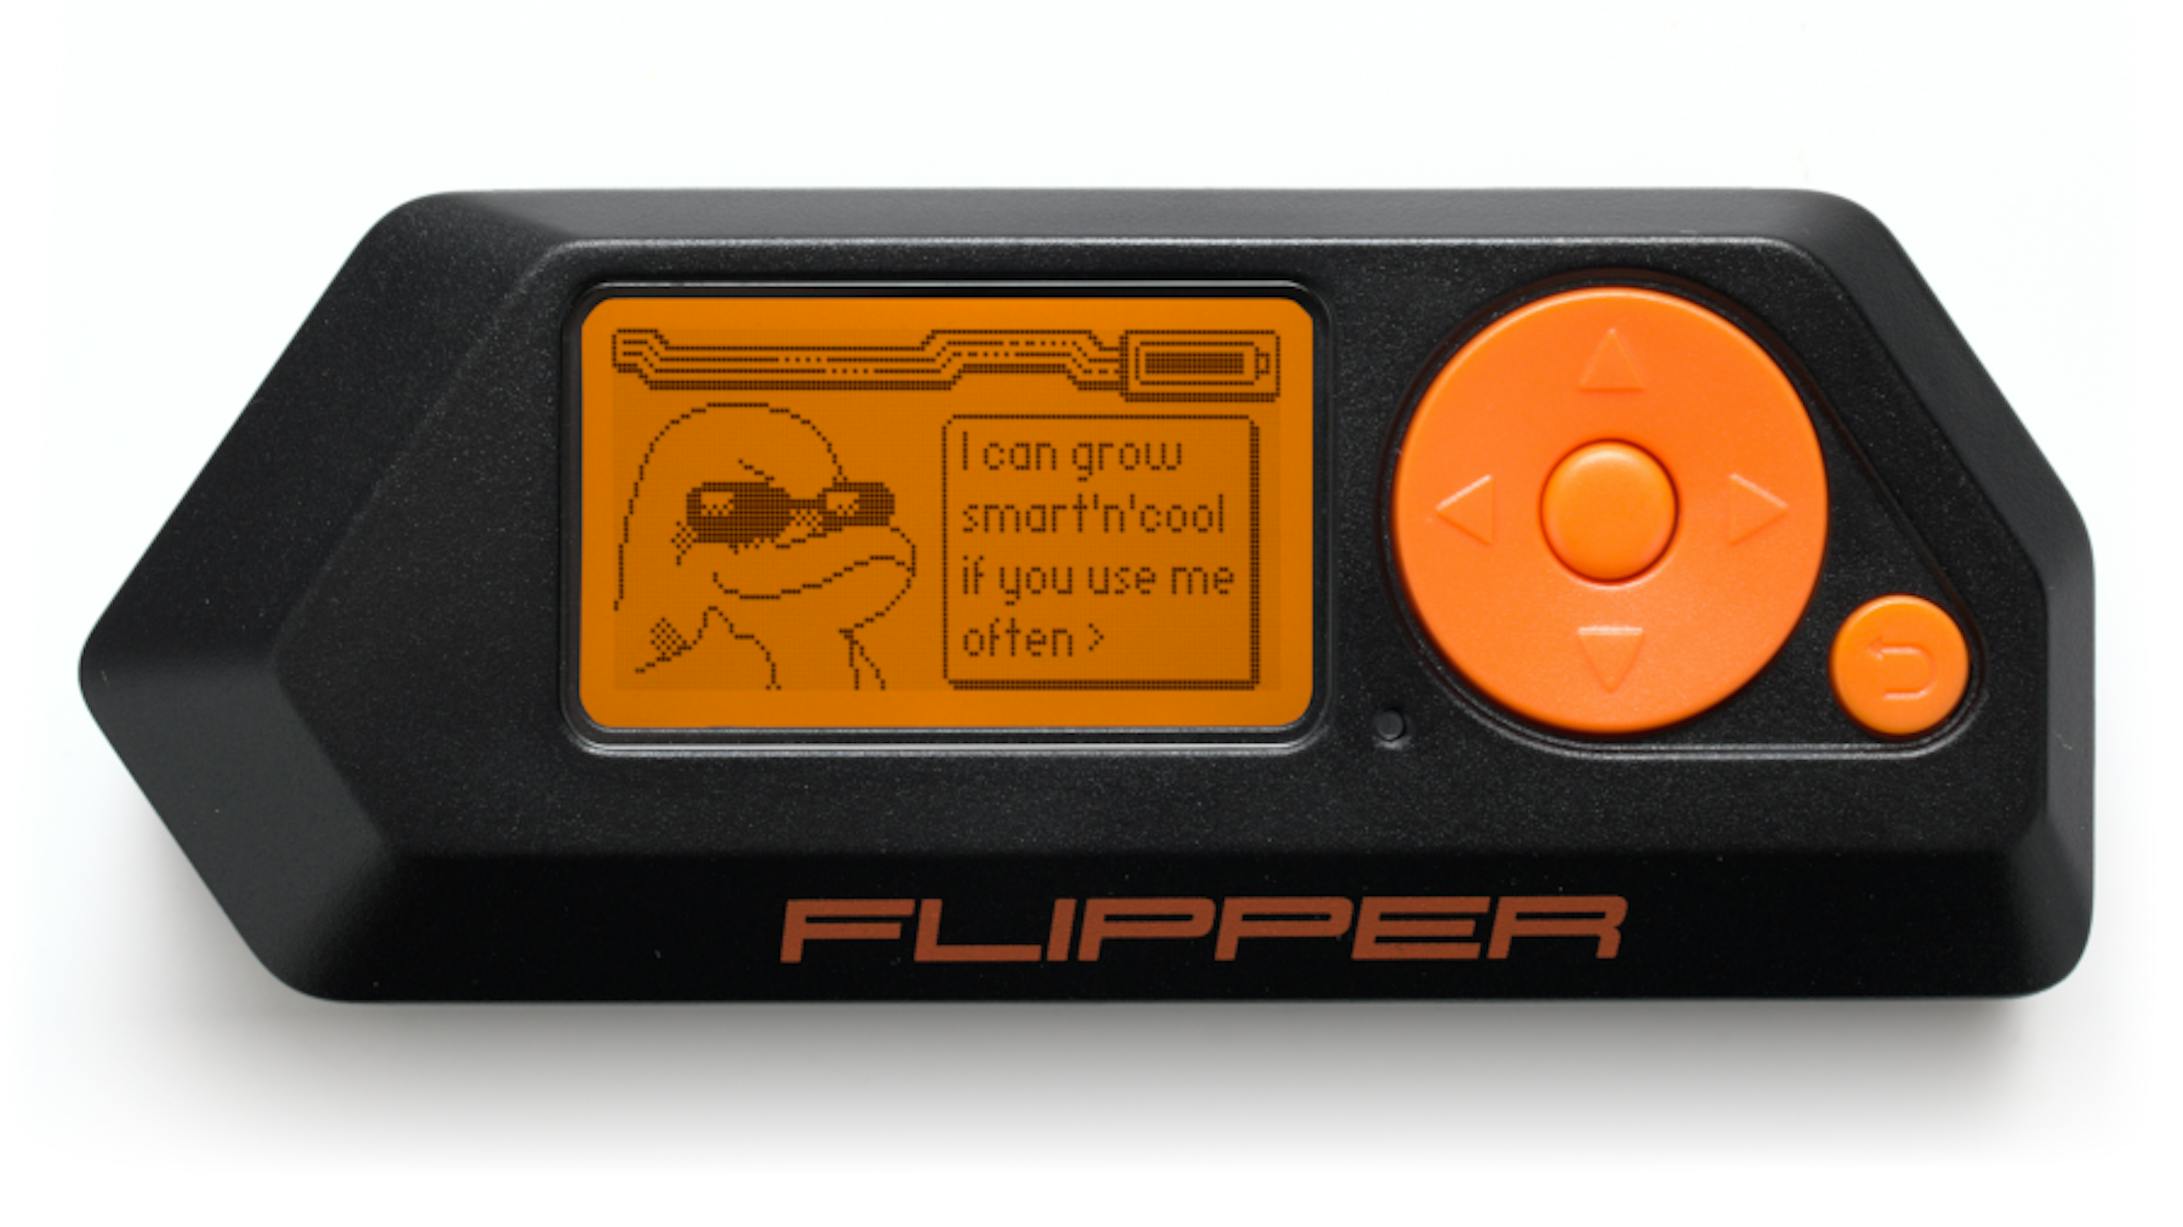 Flipper Zero Multi-tool Device